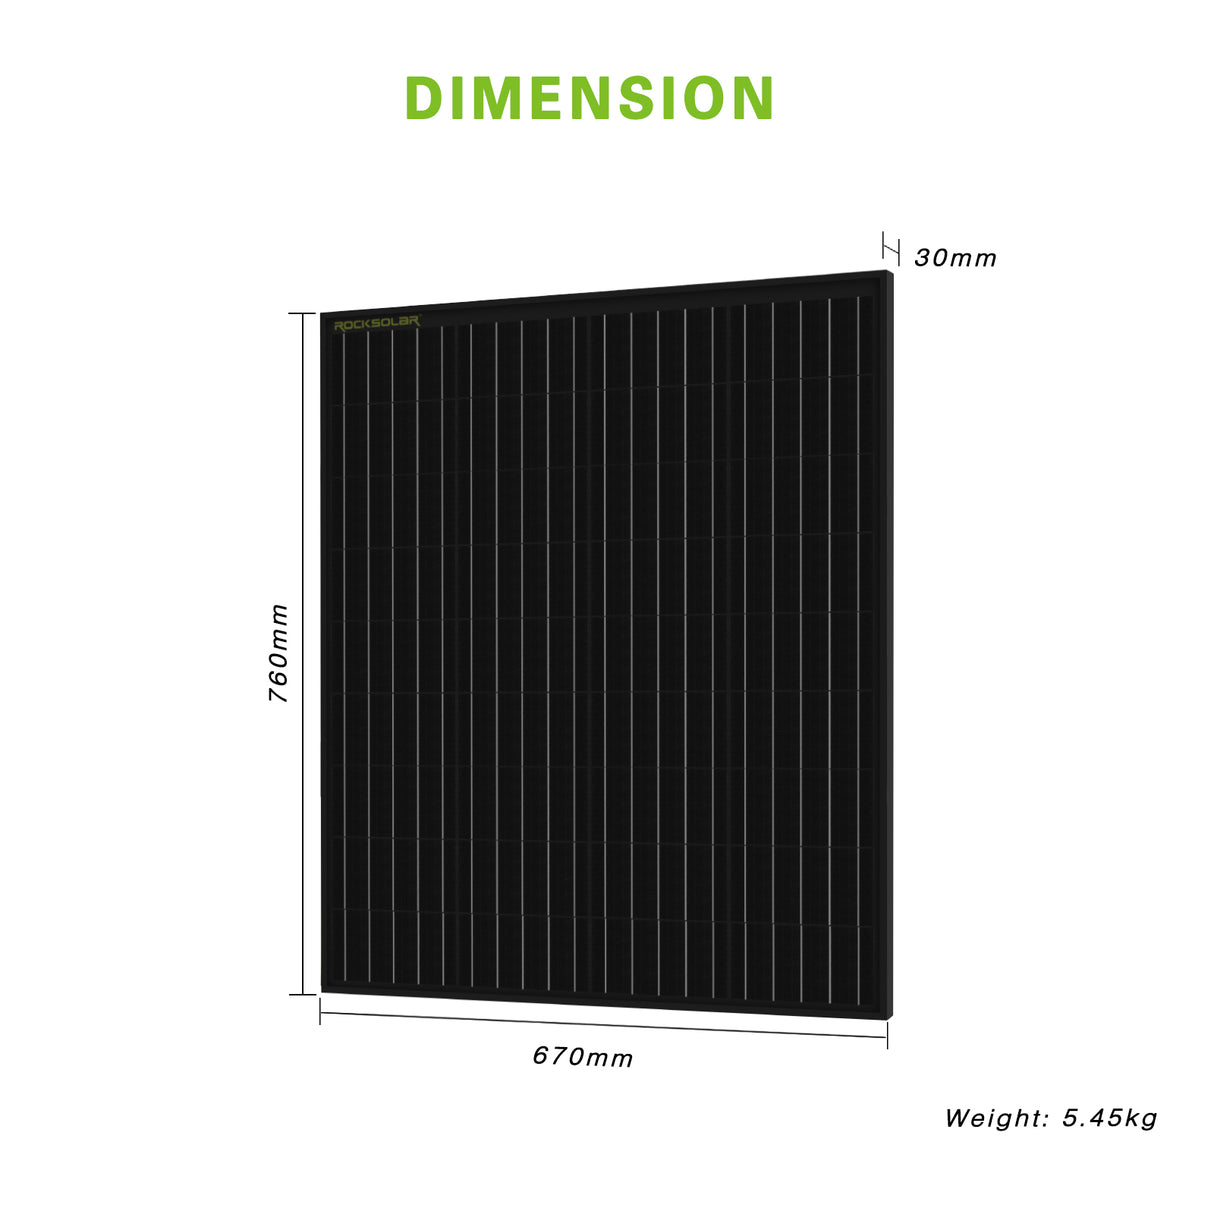 12V solar panel dimension